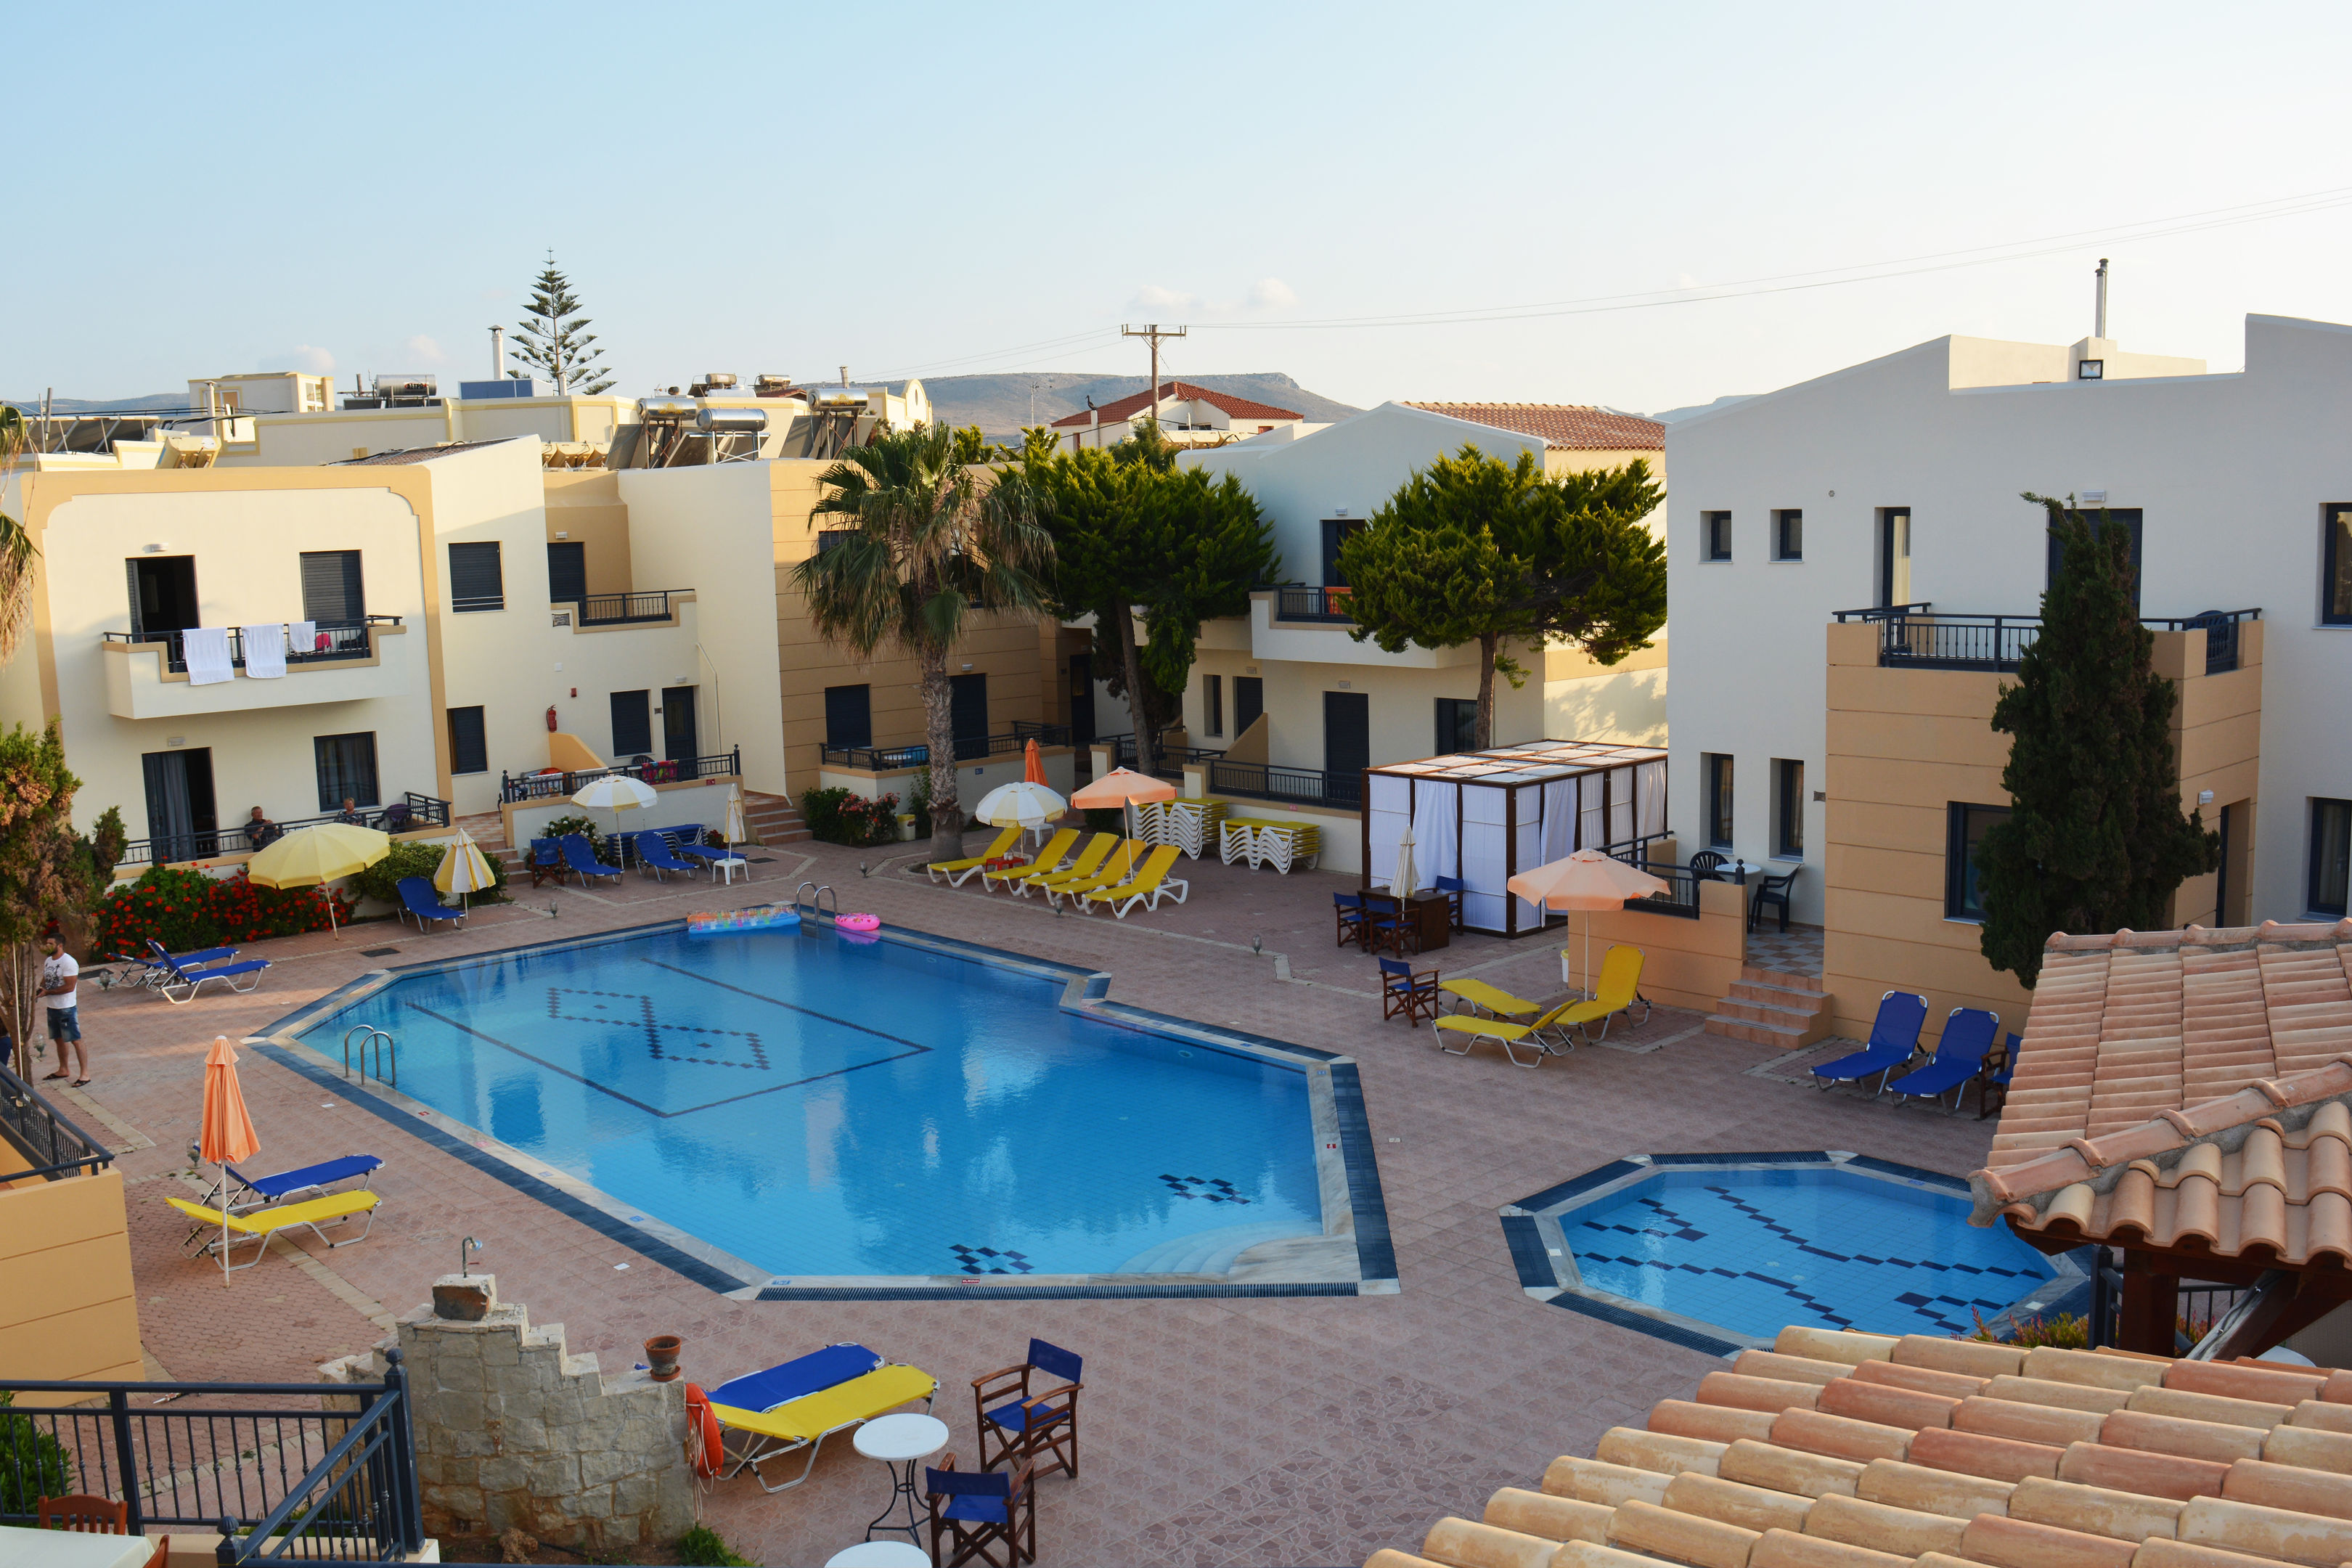 Blue Aegean Hotel & Suites Photo